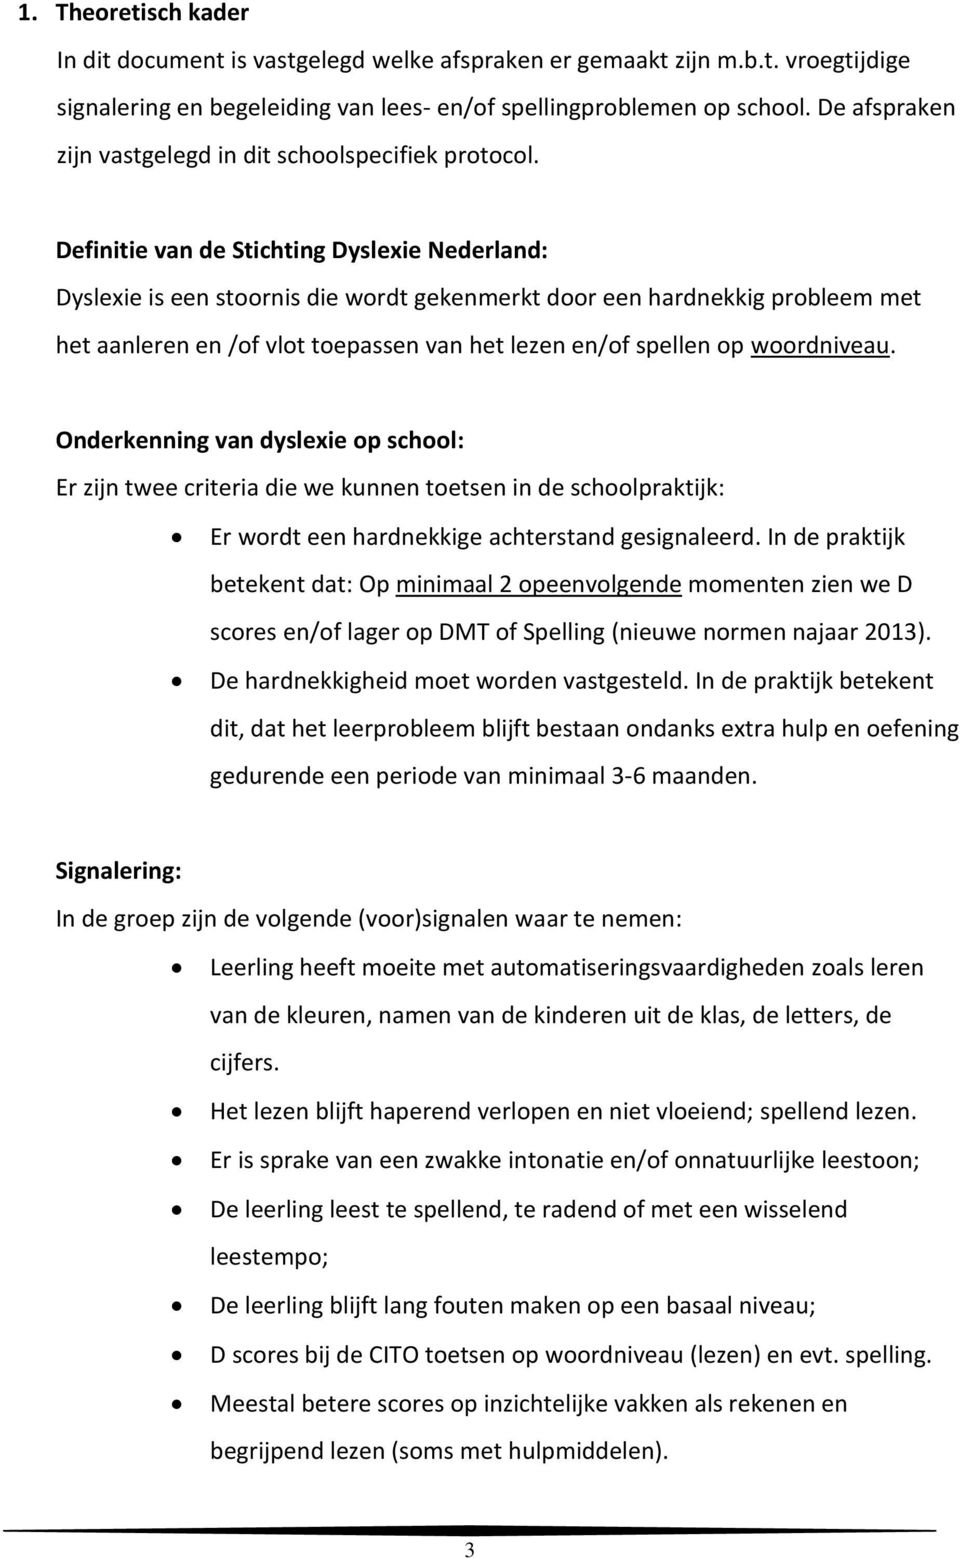 Definitie van de Stichting Dyslexie Nederland: Dyslexie is een stoornis die wordt gekenmerkt door een hardnekkig probleem met het aanleren en /of vlot toepassen van het lezen en/of spellen op